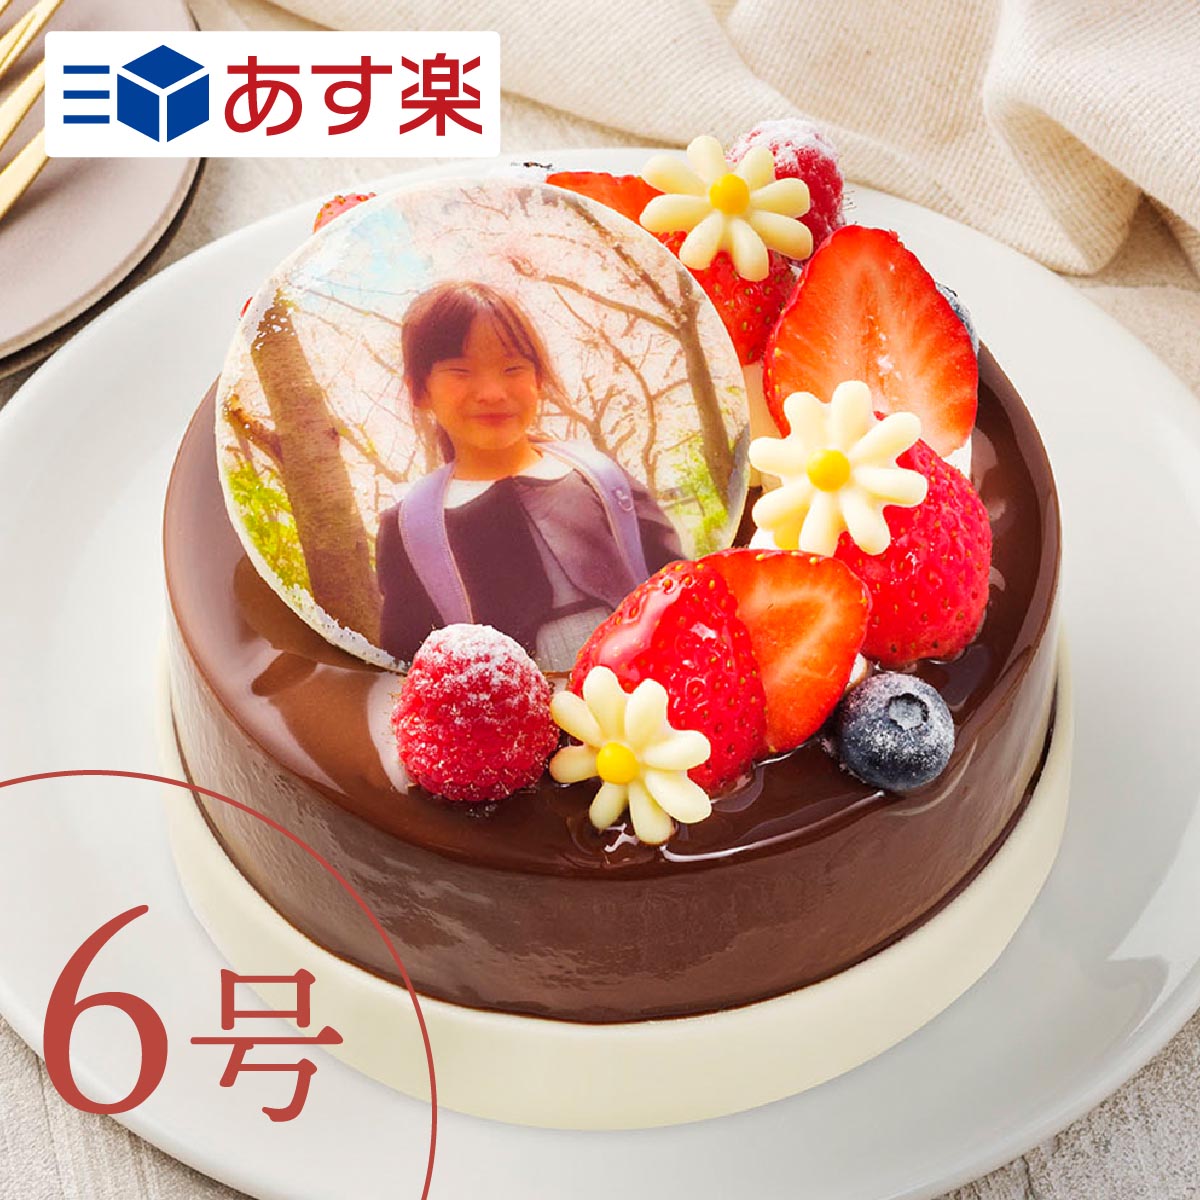 楽天美味しい写真ケーキのレ・コロレ写真ケーキ 【あす楽】 三種のチョコを使った